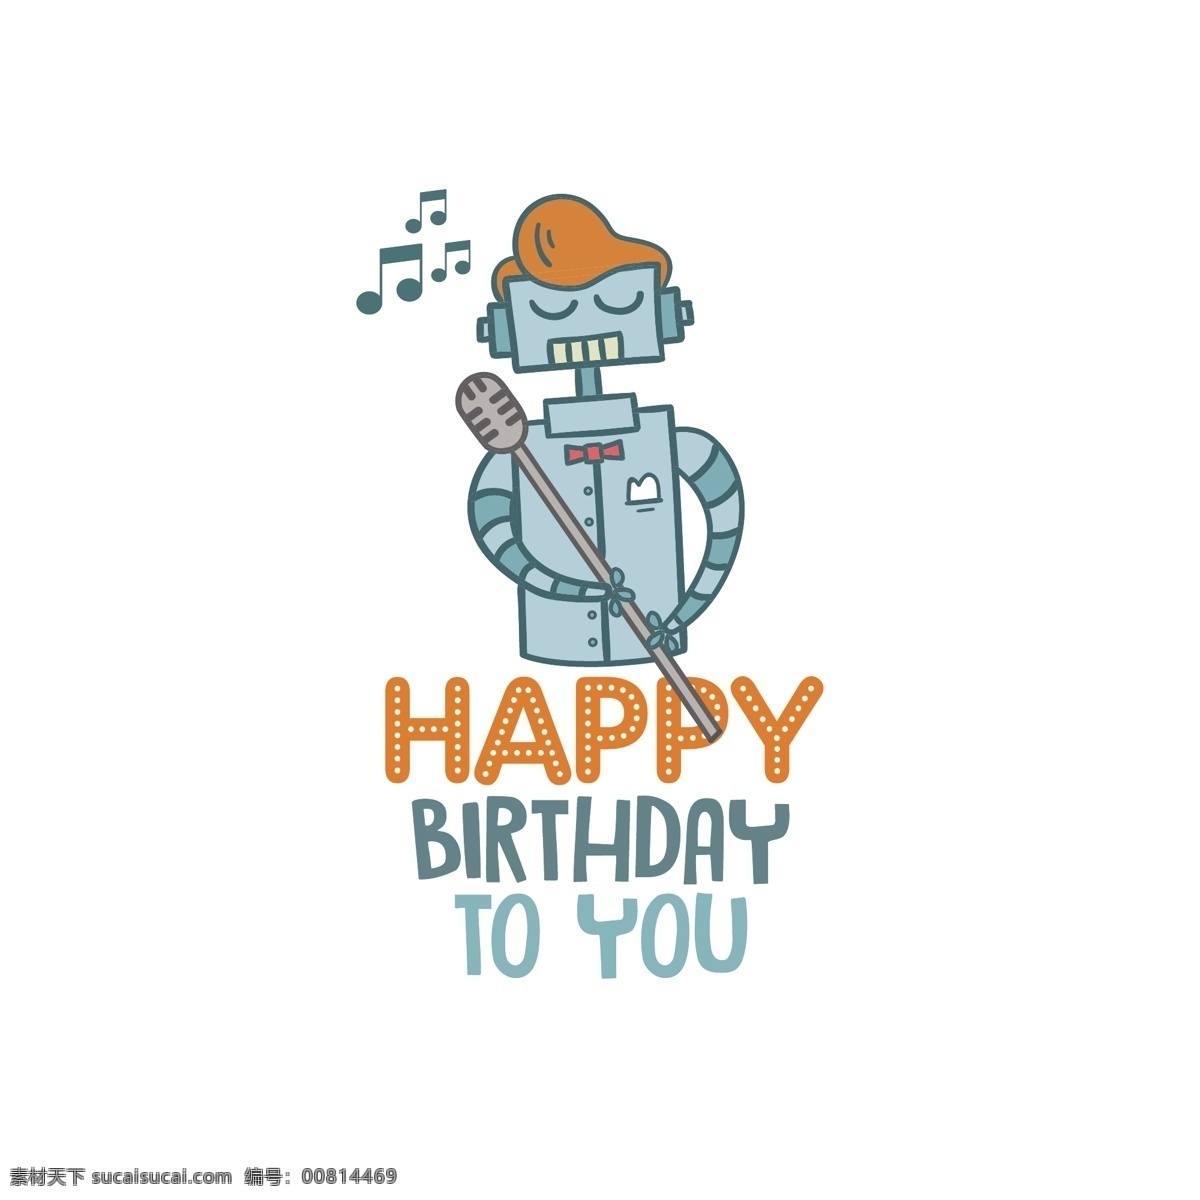 生日 快乐 机器人 插图 背景 生日快乐 机器人插图